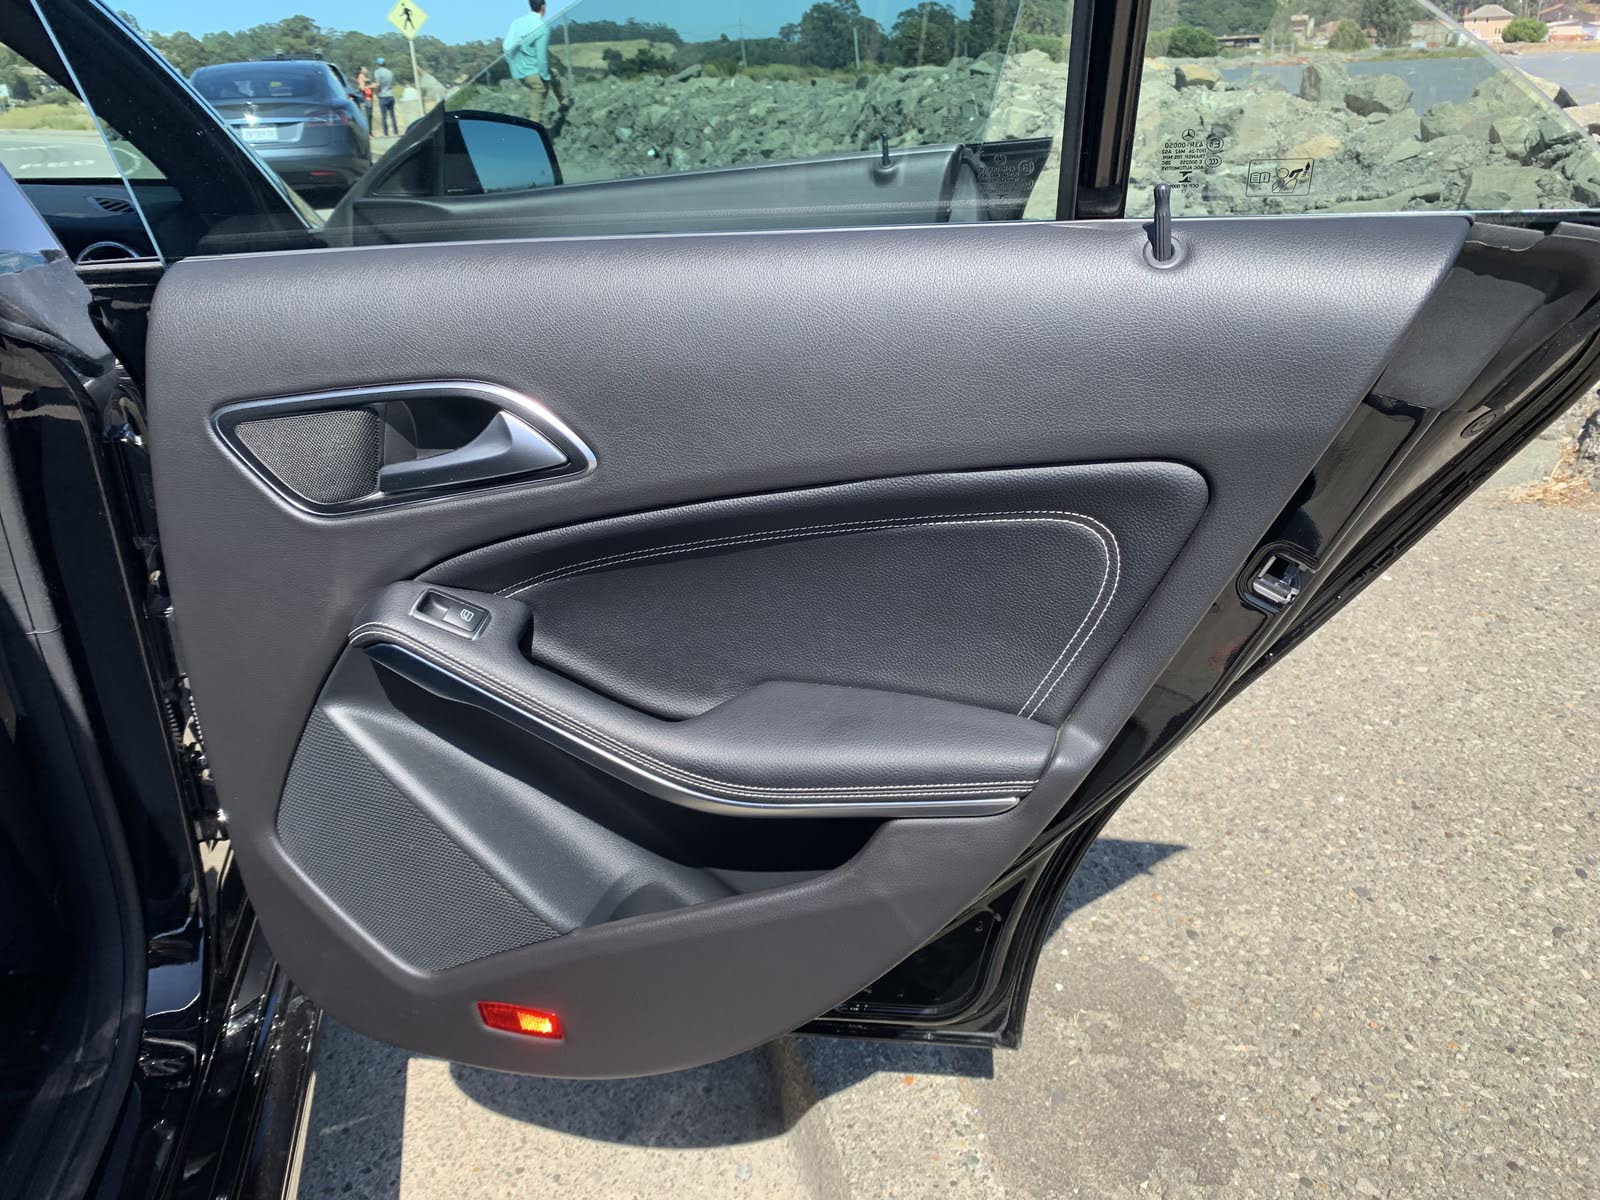 2018 Mercedes Benz Cla Class Interior Pictures Cargurus